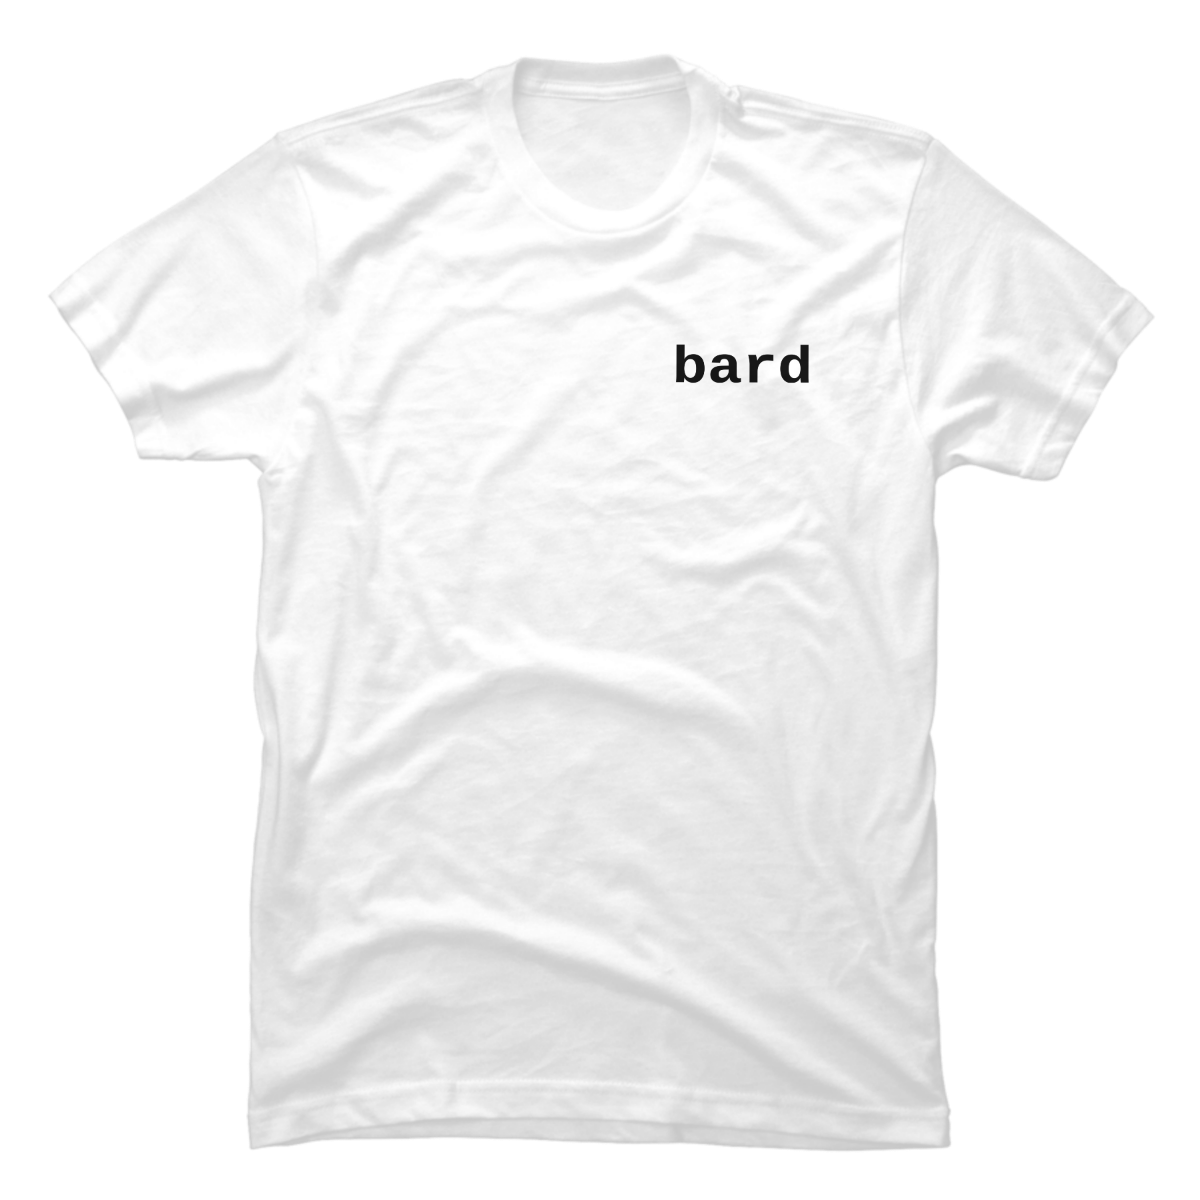 bard shirt